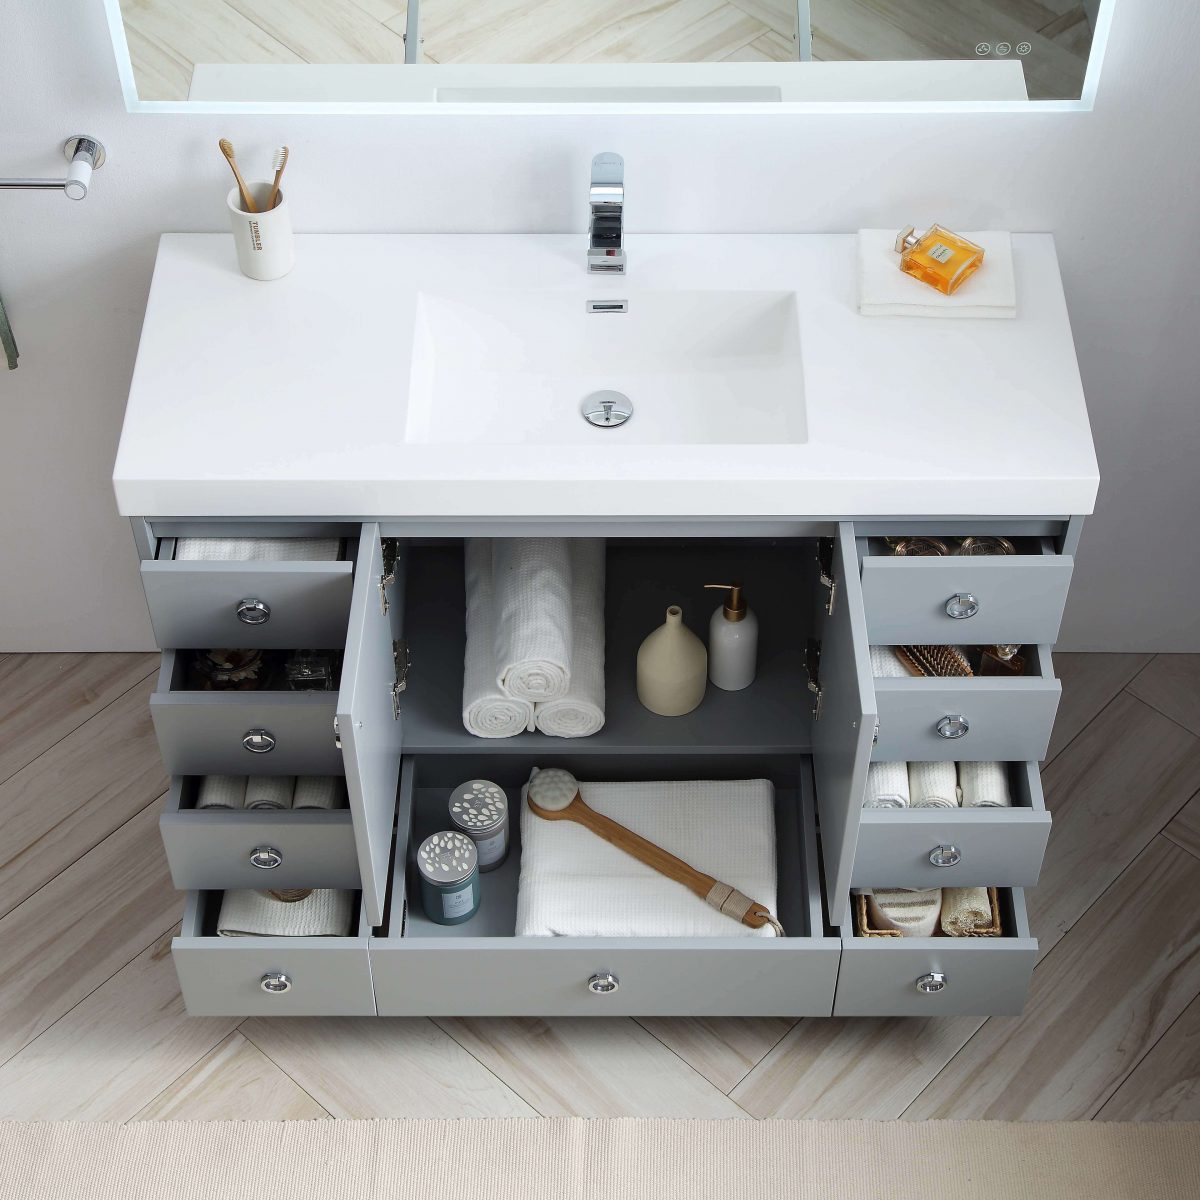 Lyon 48" Bathroom Vanity  #size_48"  #color_metal grey #countertop_acrylic